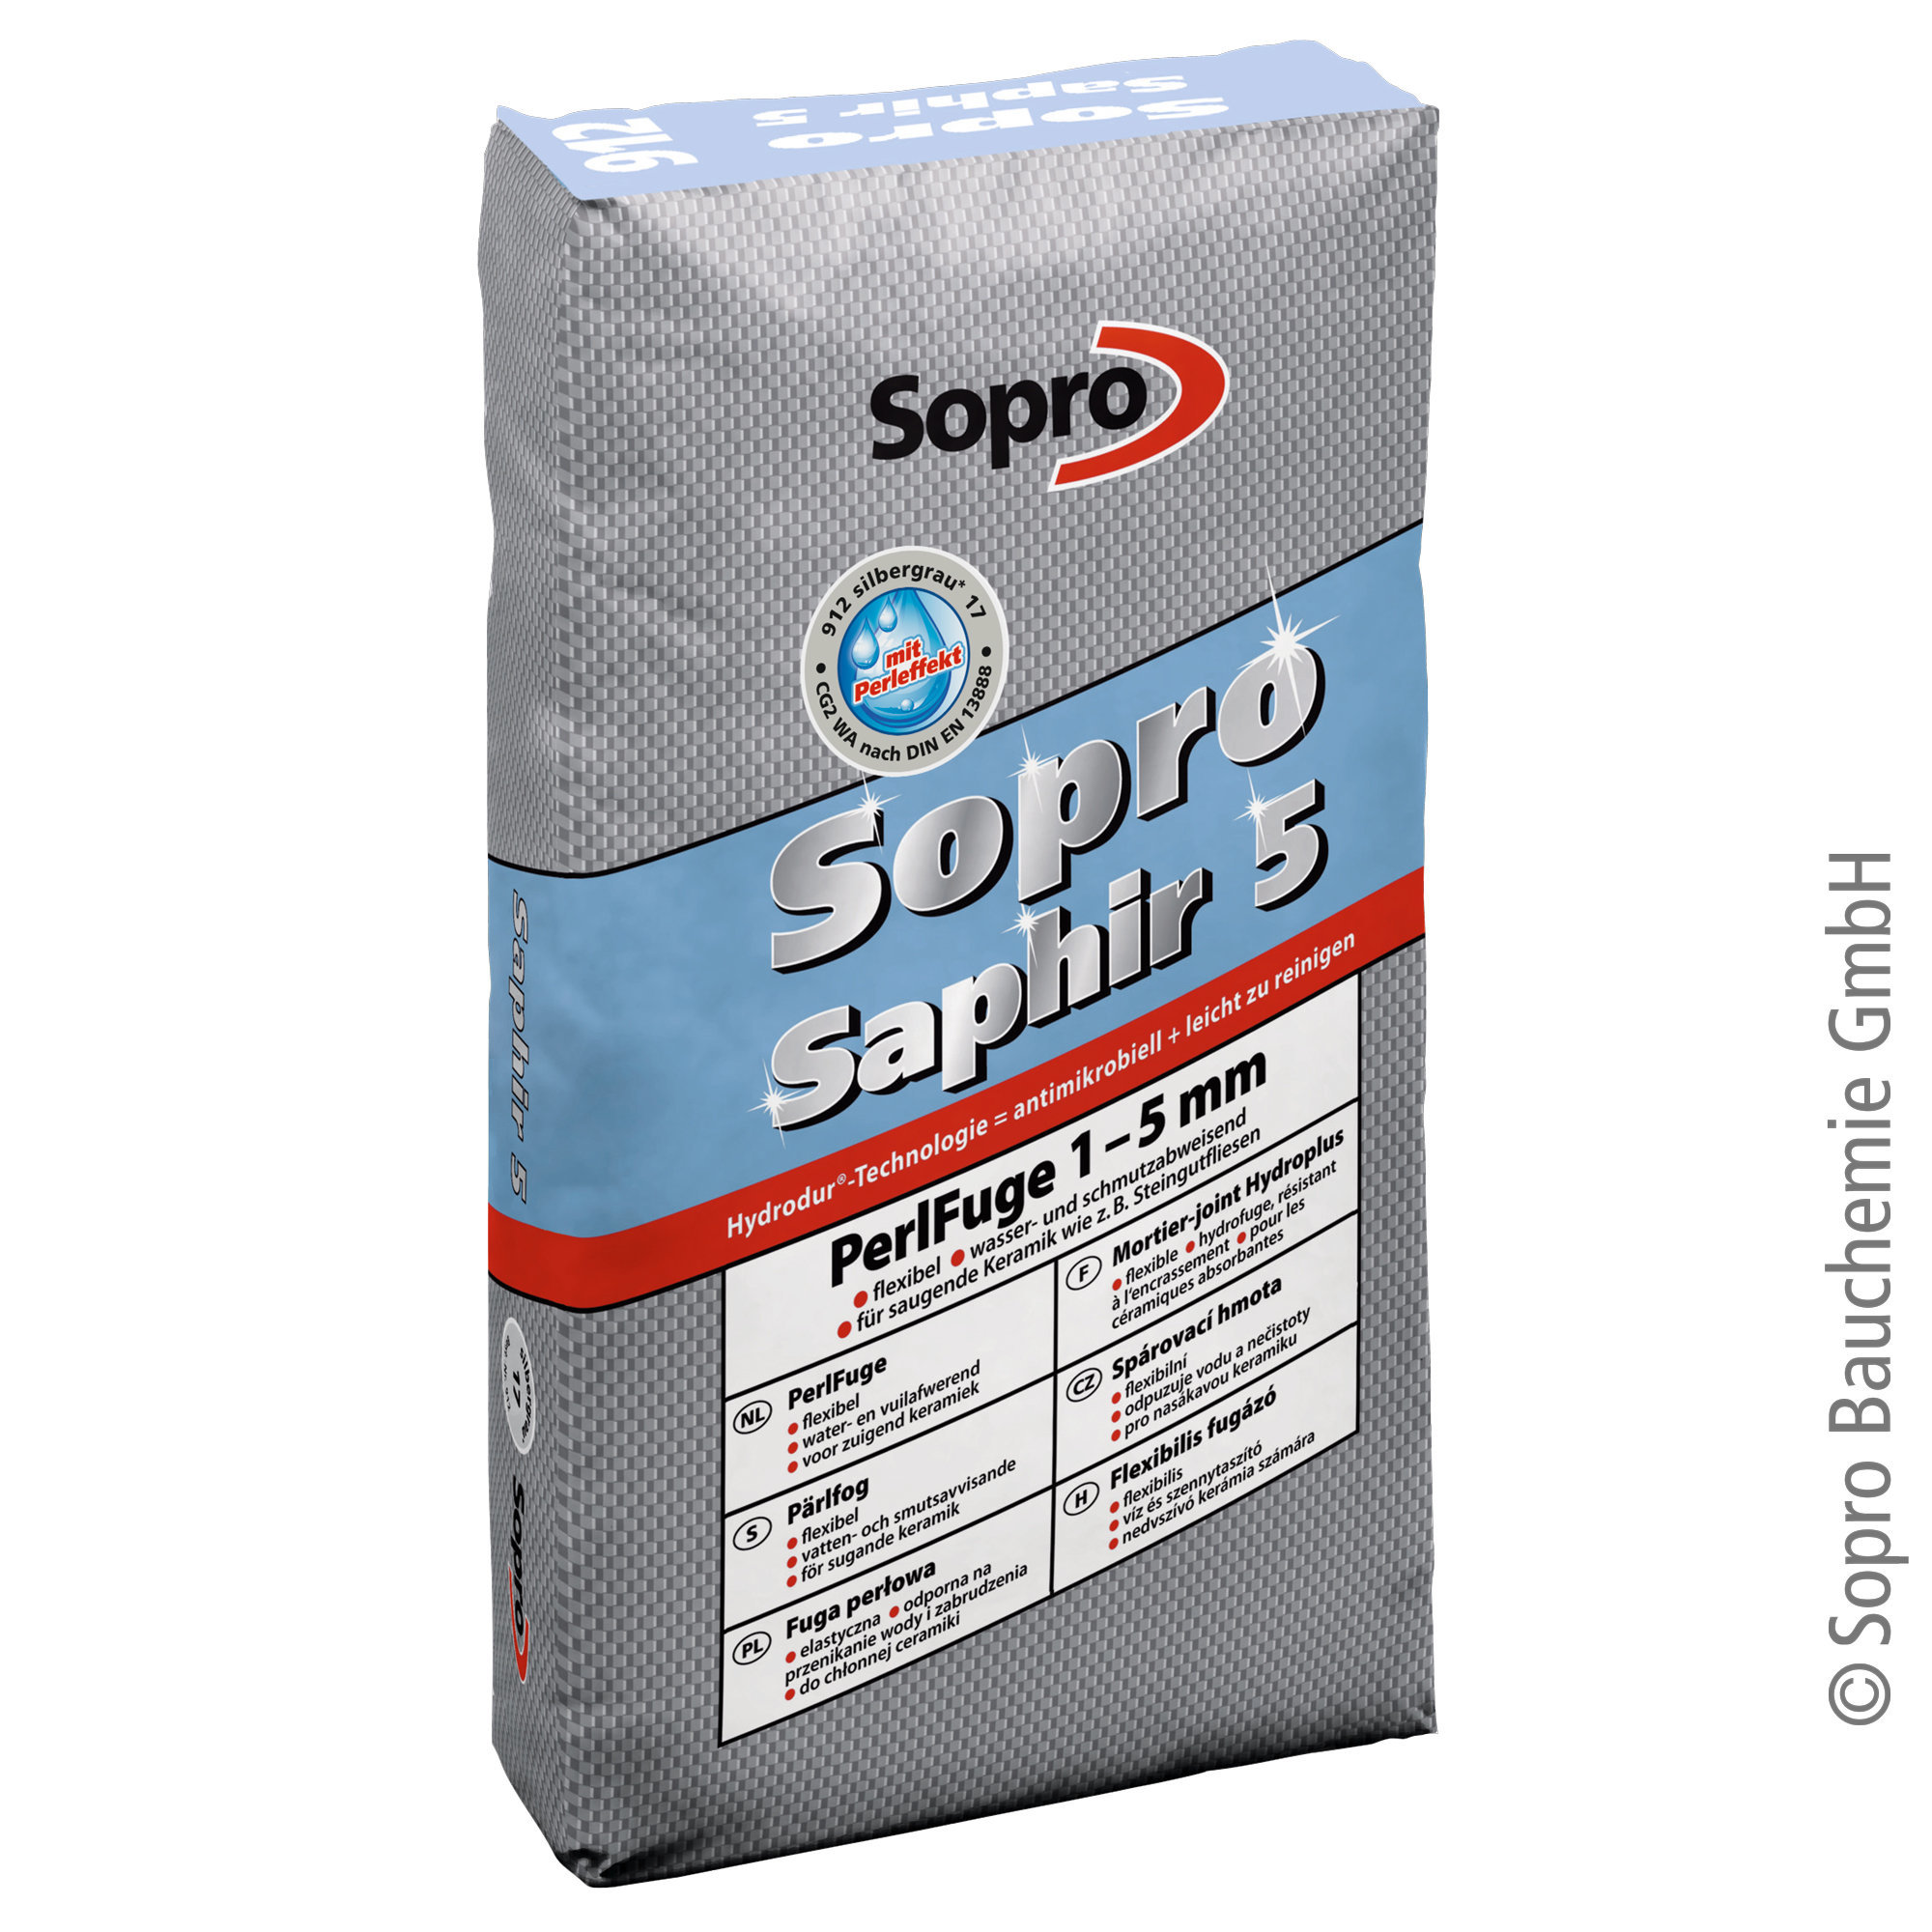 Sopro Saphir 5 PerlFuge 910